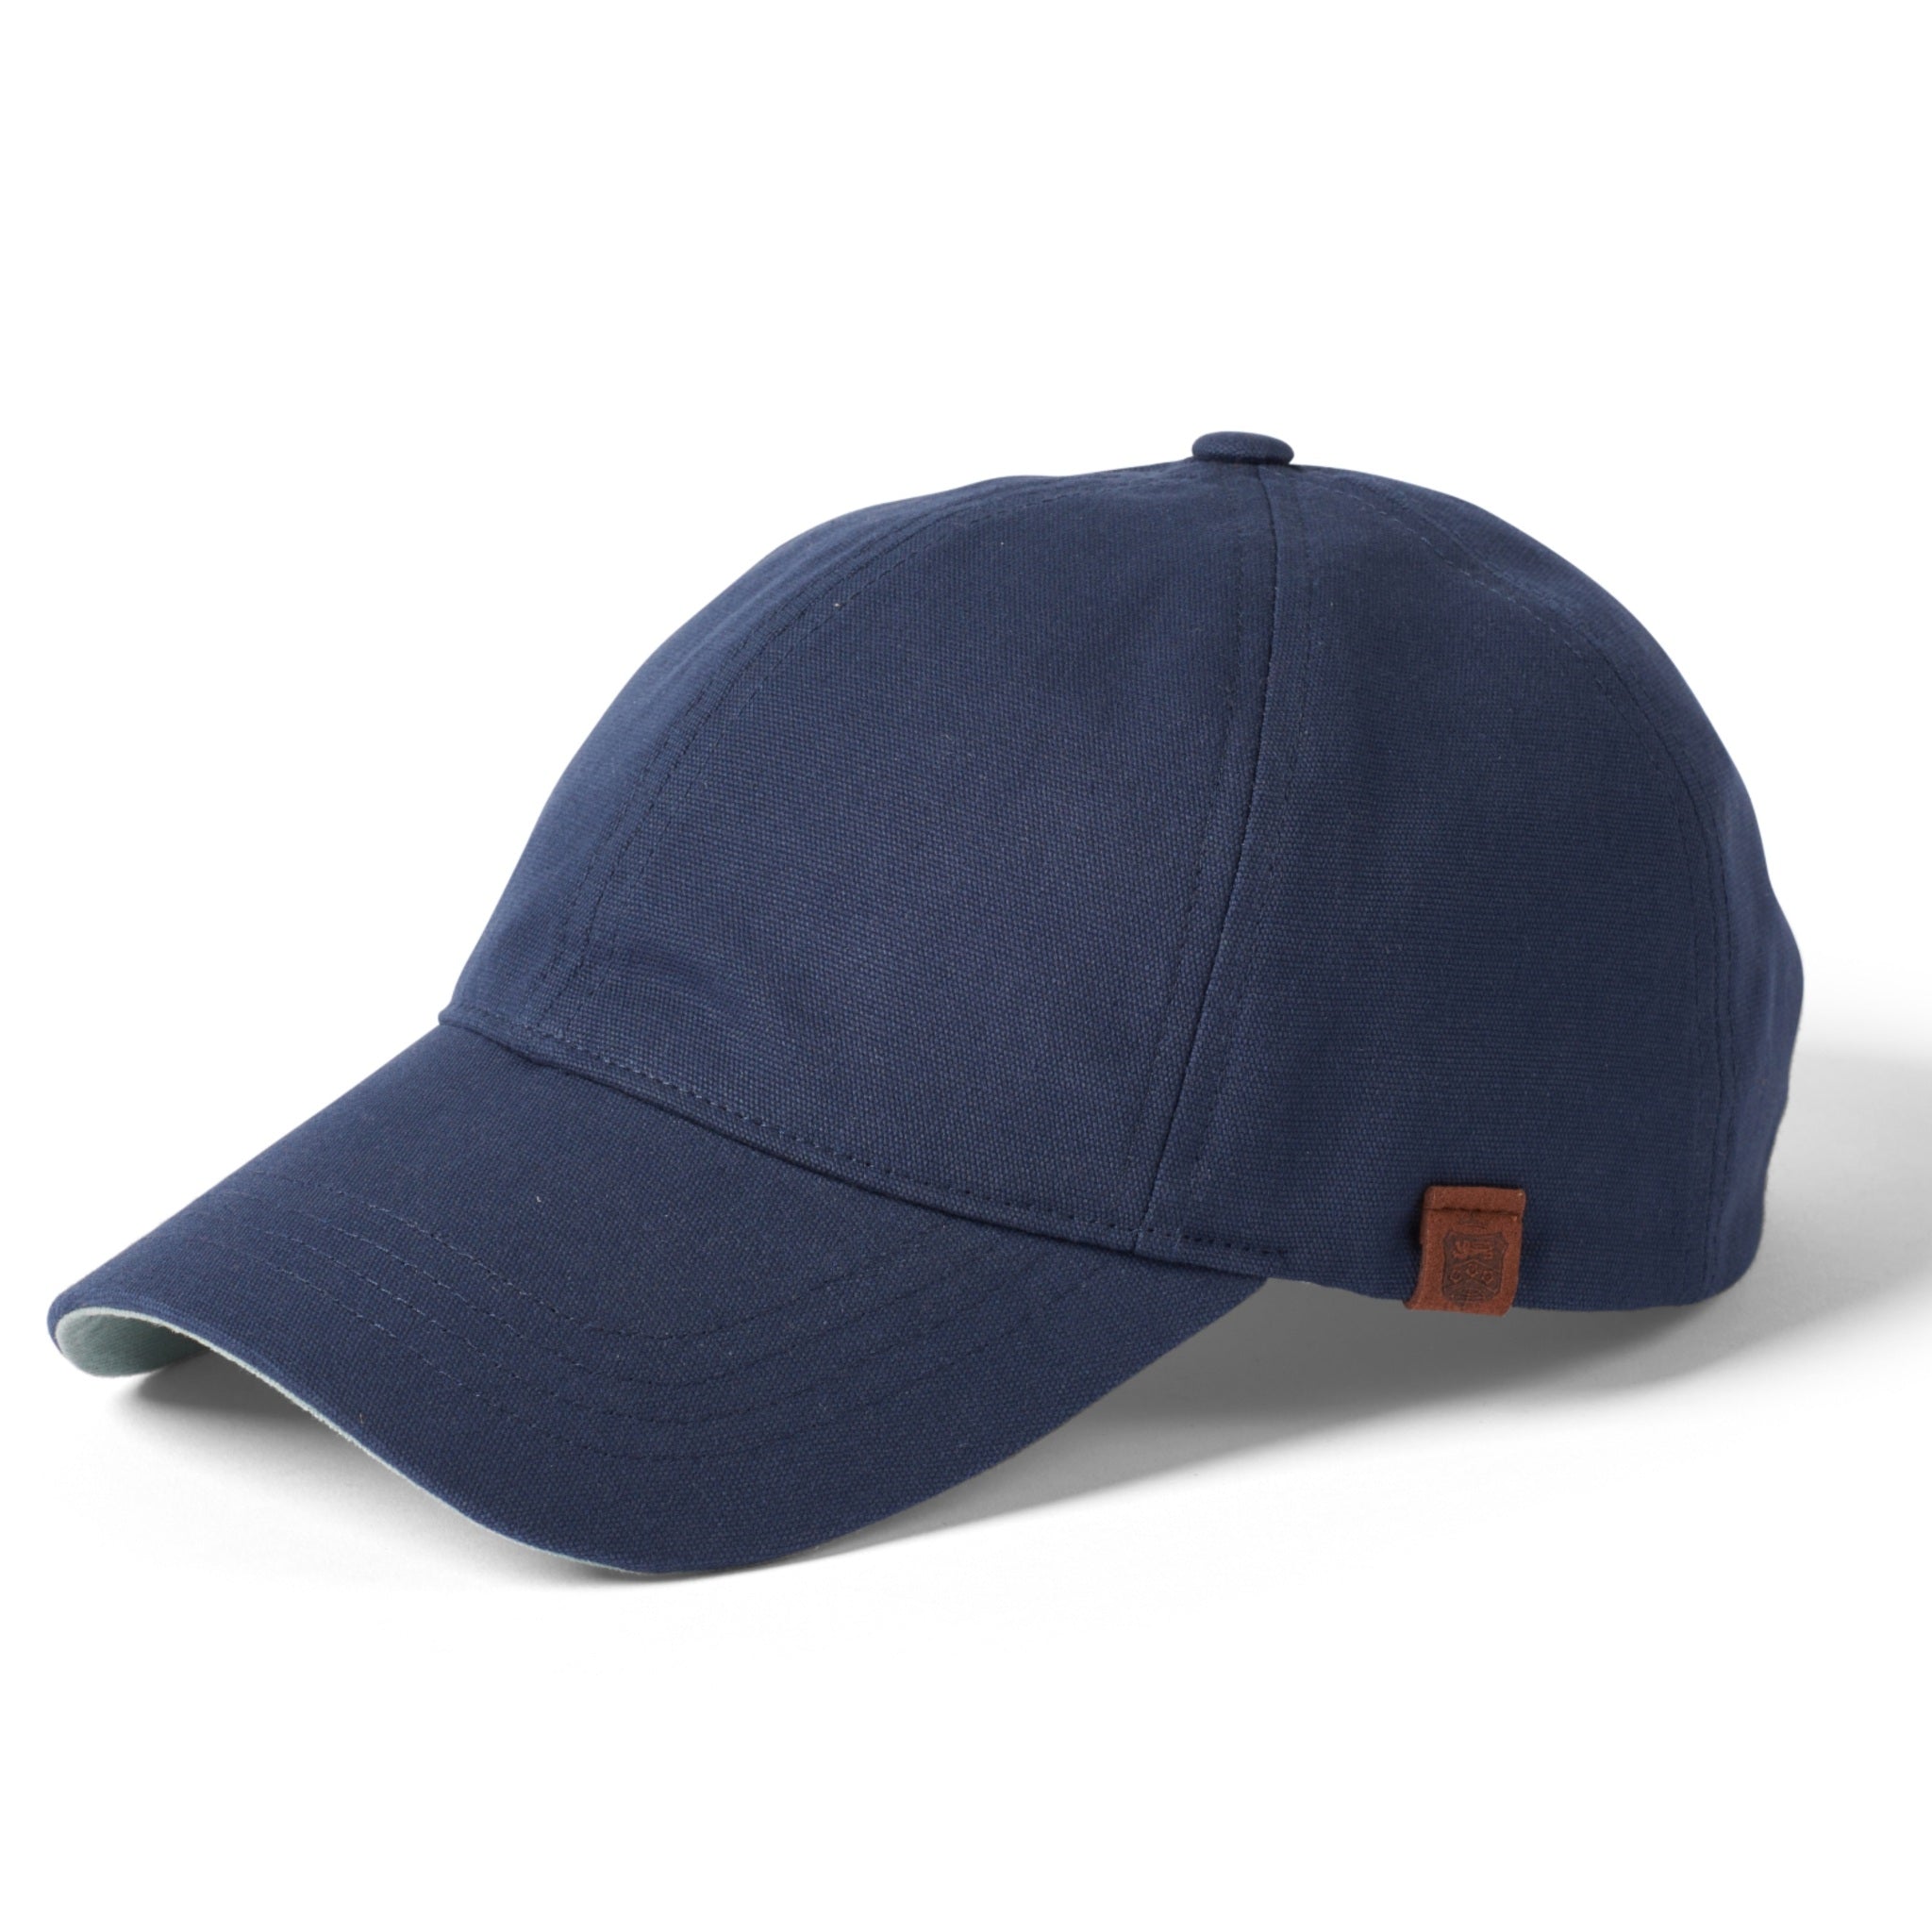 The Hat Shop Failsworth 100% Cotton Canvas Baseball Cap Navy Mint